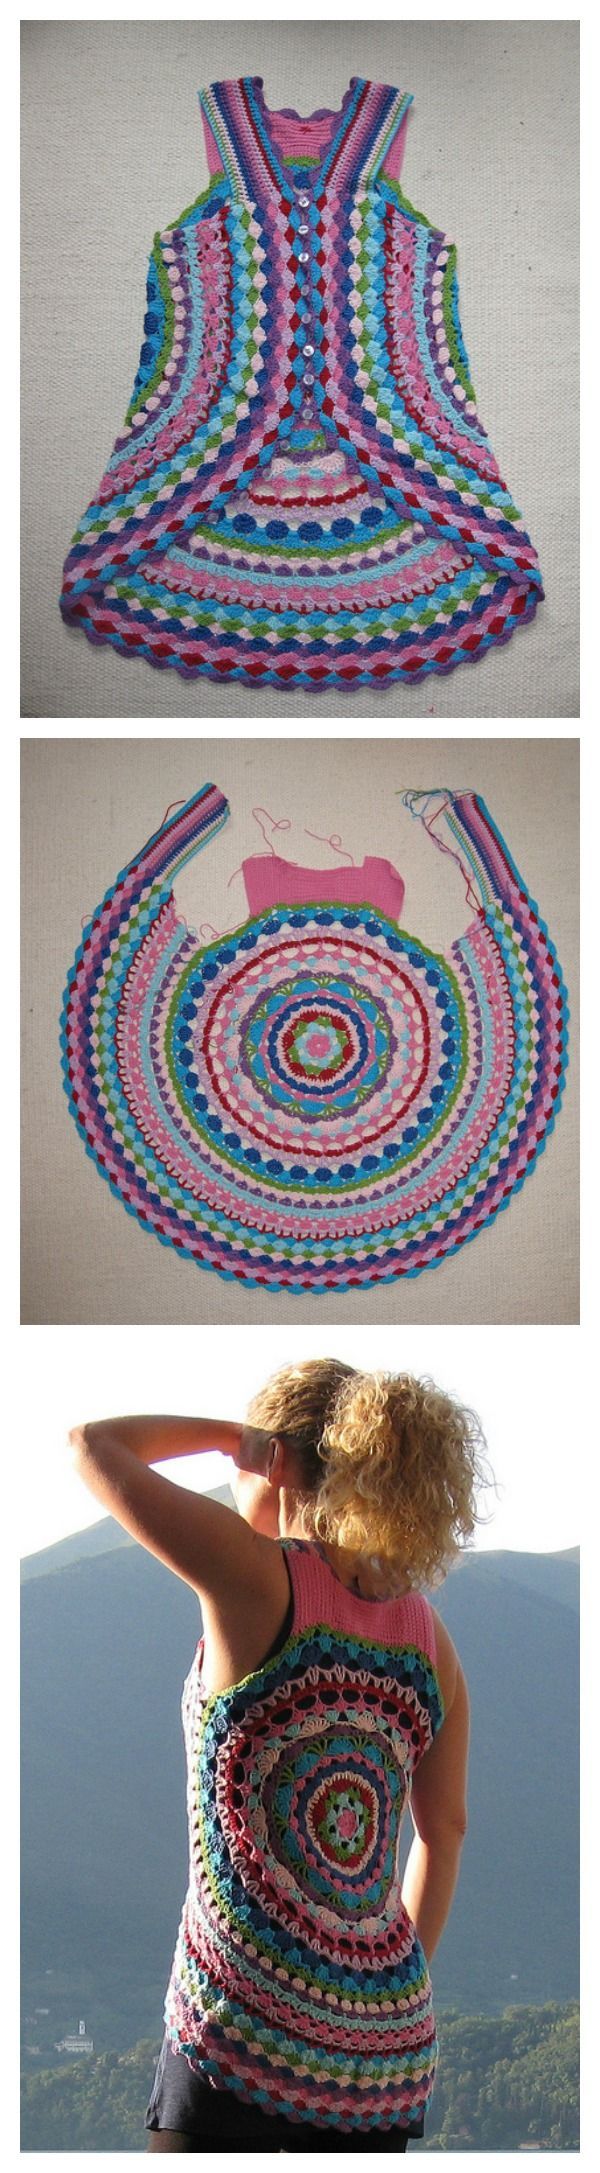 LULs Flower Power Vest FREE Crochet Pattern